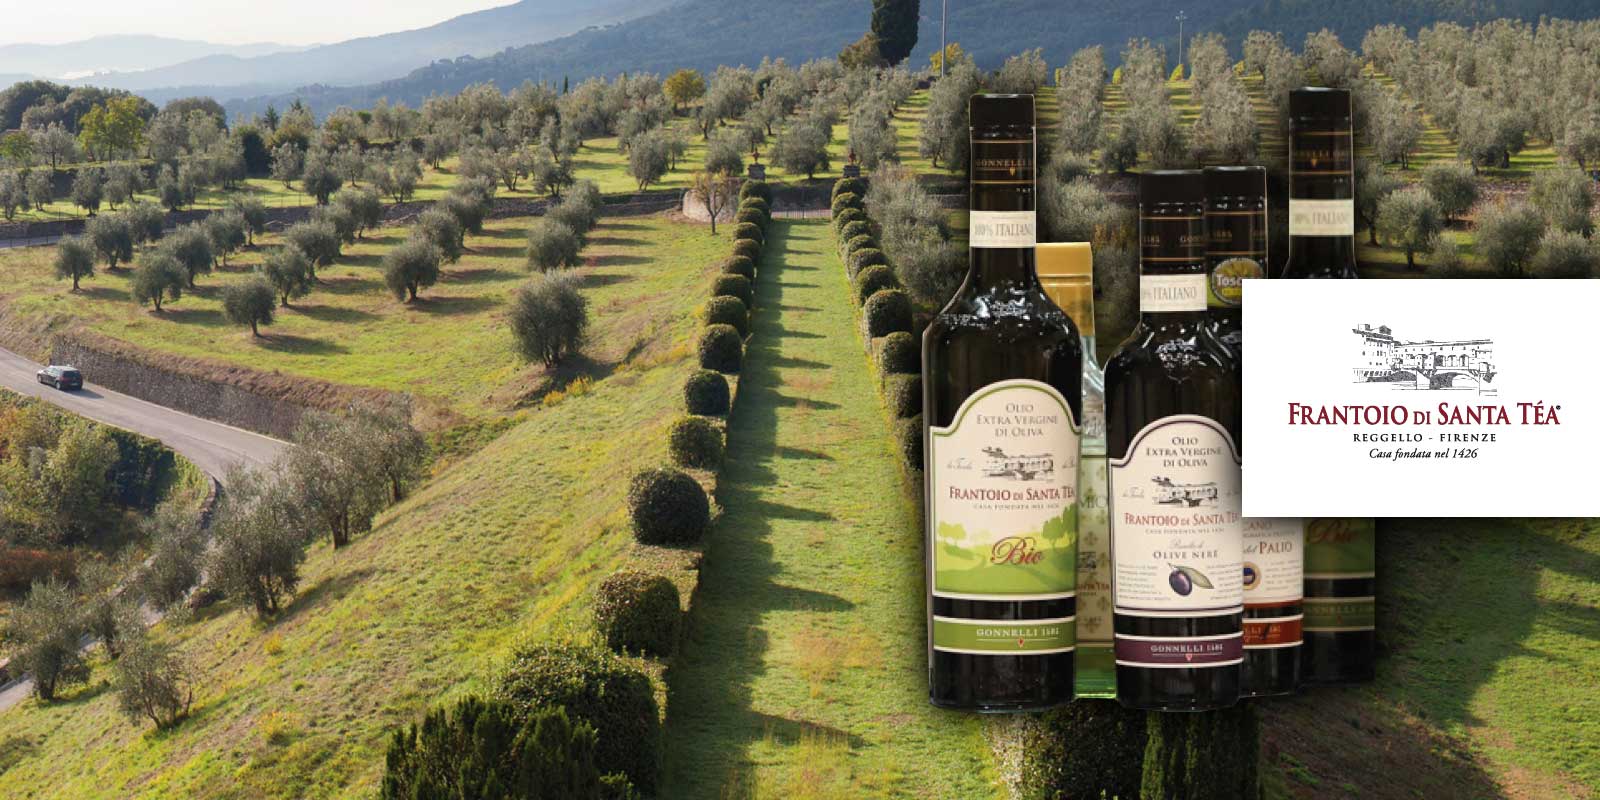 Gonnelli Frantoio di Santa Tea 1585 maslinovo ulje iz Toskane Gonnelli 1585 je brend koji predstavlja odnos izmedu obitelji Gonnelli i svijeta tradicionalne proizvodnje ulja. Godine 1585. obitelj je kupila farmu Santa Tea i njezinu uljaru, izgradenu 1426. godine. Danas je tvrtka, vlasnik mlina Vertine u Chianti Classicu, jedna od talijanskih izvrsnosti u svijetu djevicanskog maslinovog ulja. Filozofija je uvijek bila ponuditi zdravo, izvorno i prirodno maslinovo ulje.
Gonnelli 1585, koji je postigao nekoliko prekretnica u sektoru i kontinuirano potvrduje vaznost maslinovog ulja kao namirnice s bezbrojnim nutritivnim i zdravstvenim svojstvima, kao i nositelja okusa i vrijednosti u svakom jelu i pripremi. Danas Gonnelli 1585 nudi sirok i raznolik asortiman proizvoda s mnogo razlicitih ulja s razlicitim okusima i aromama.